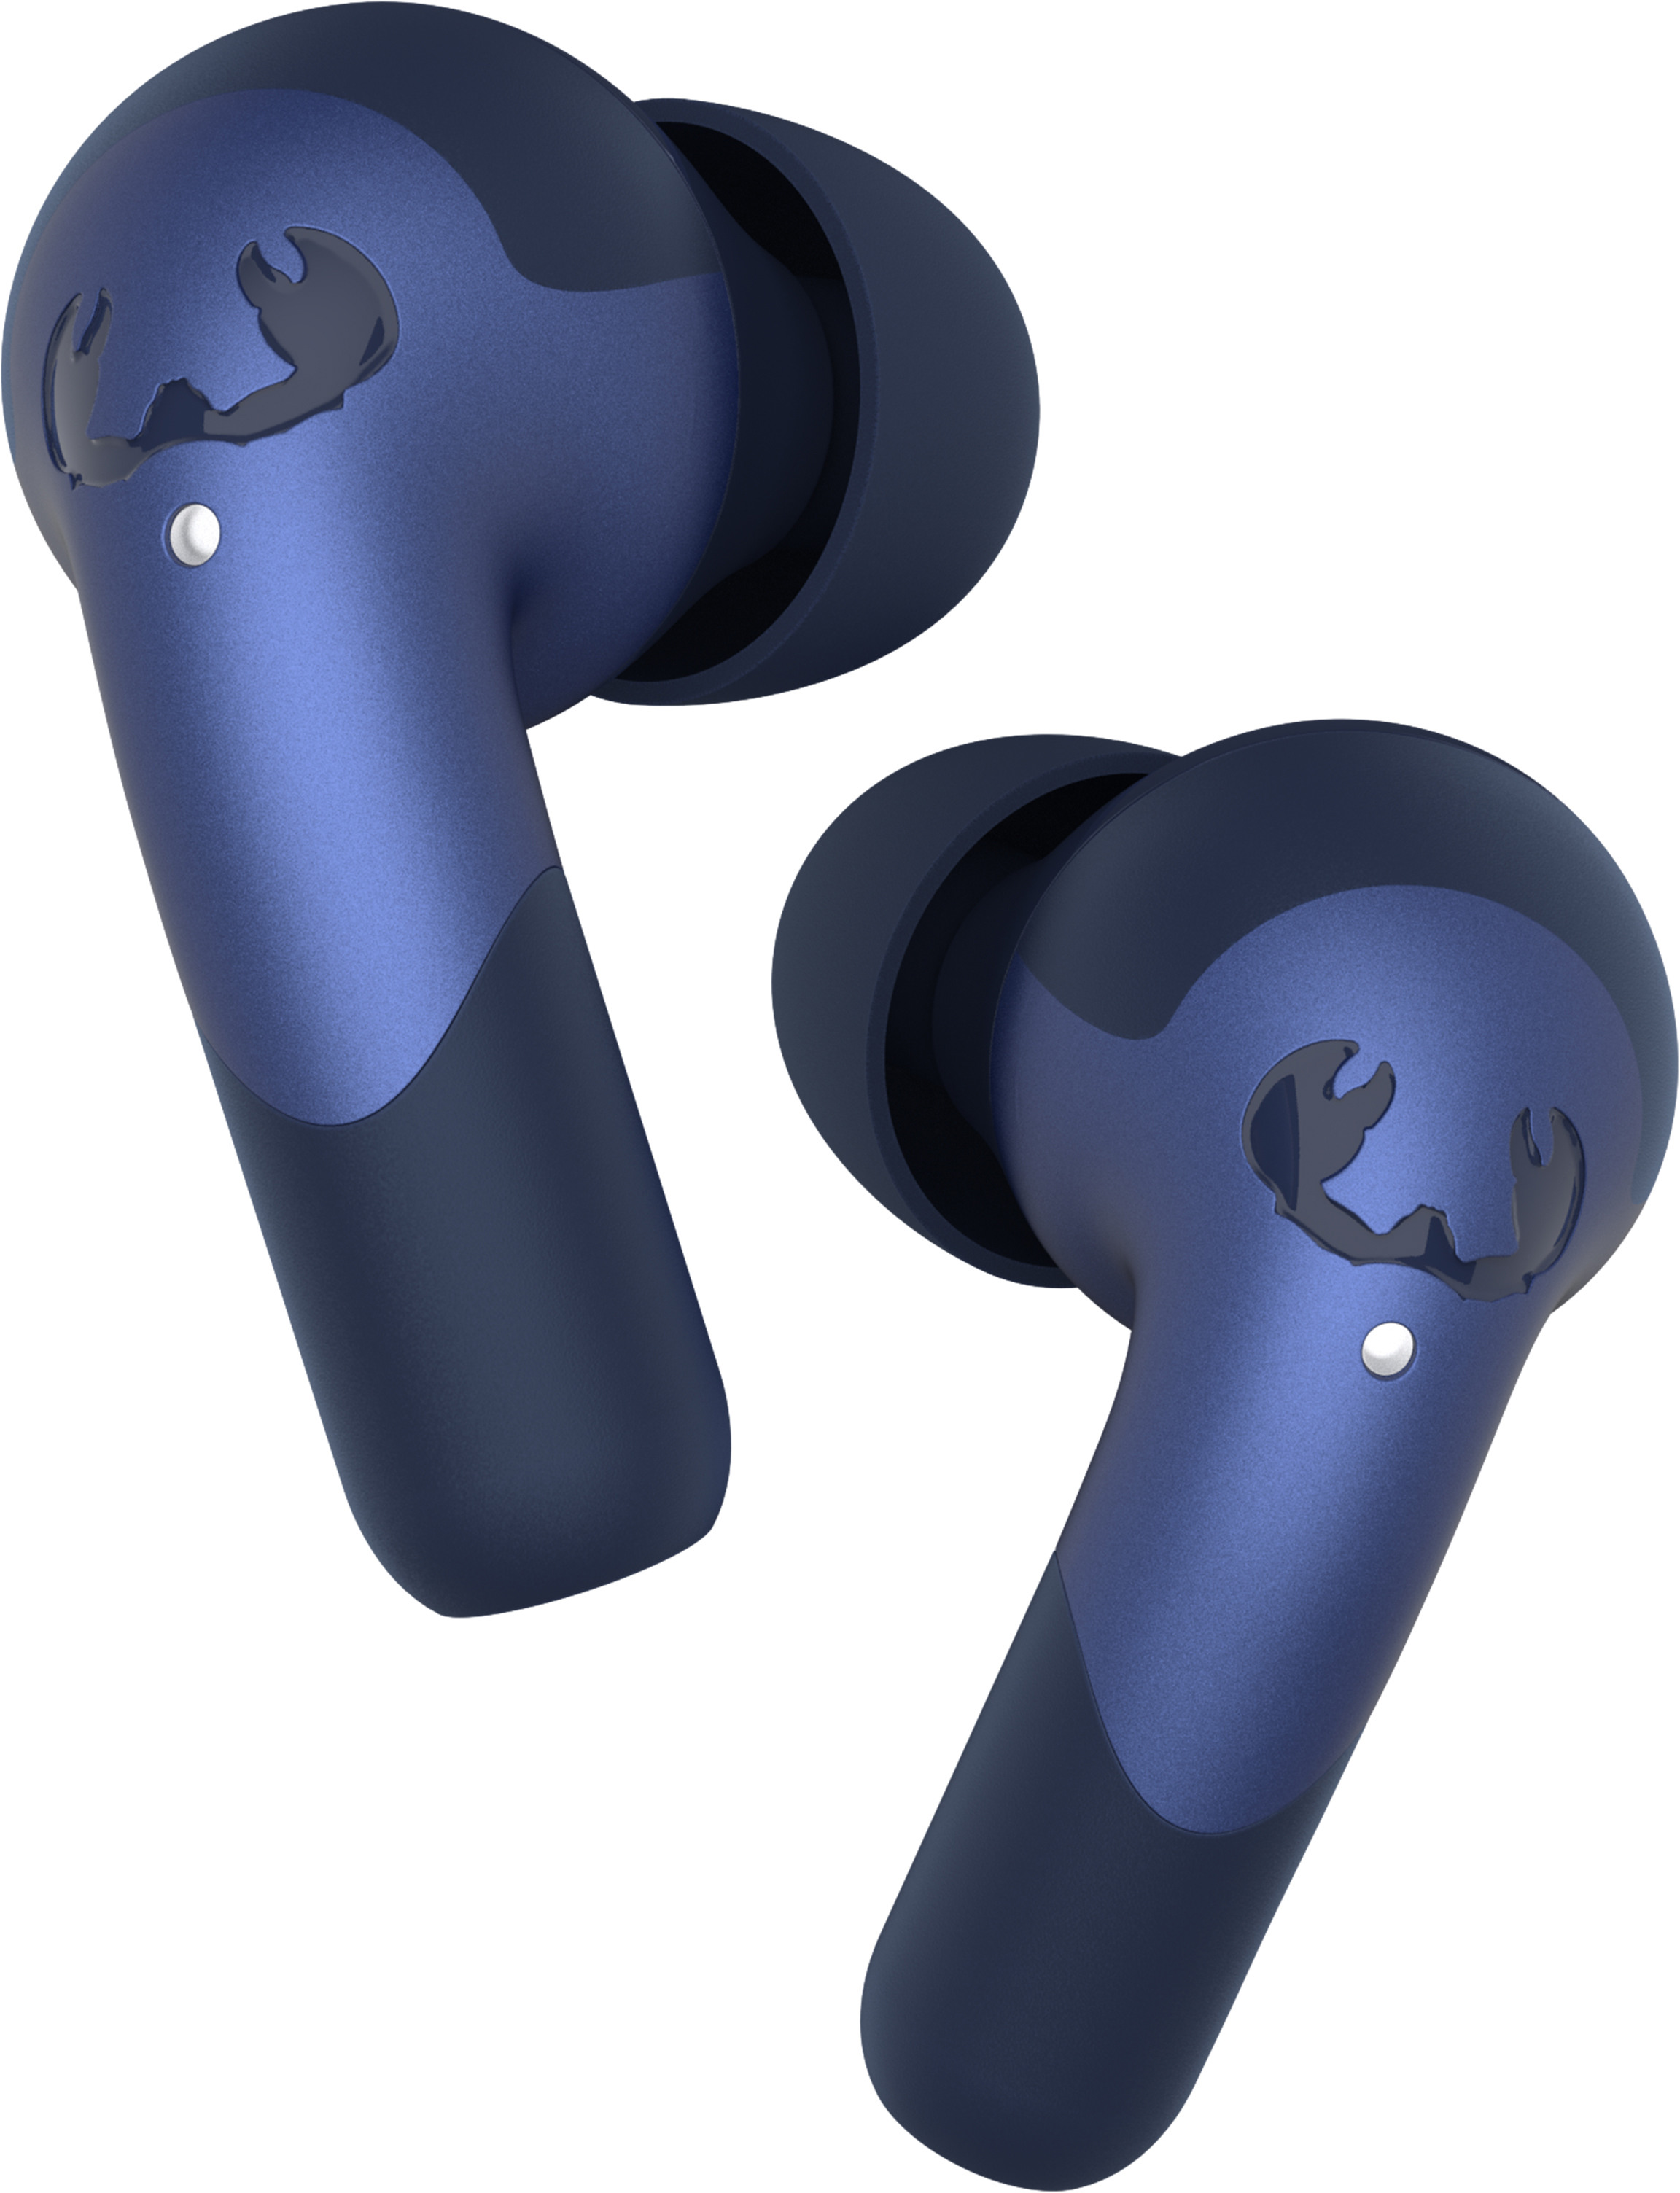 FRESH'N REBEL Twins Ace - TWS earbuds 3TW3200TB True Blue Hybrid ANC